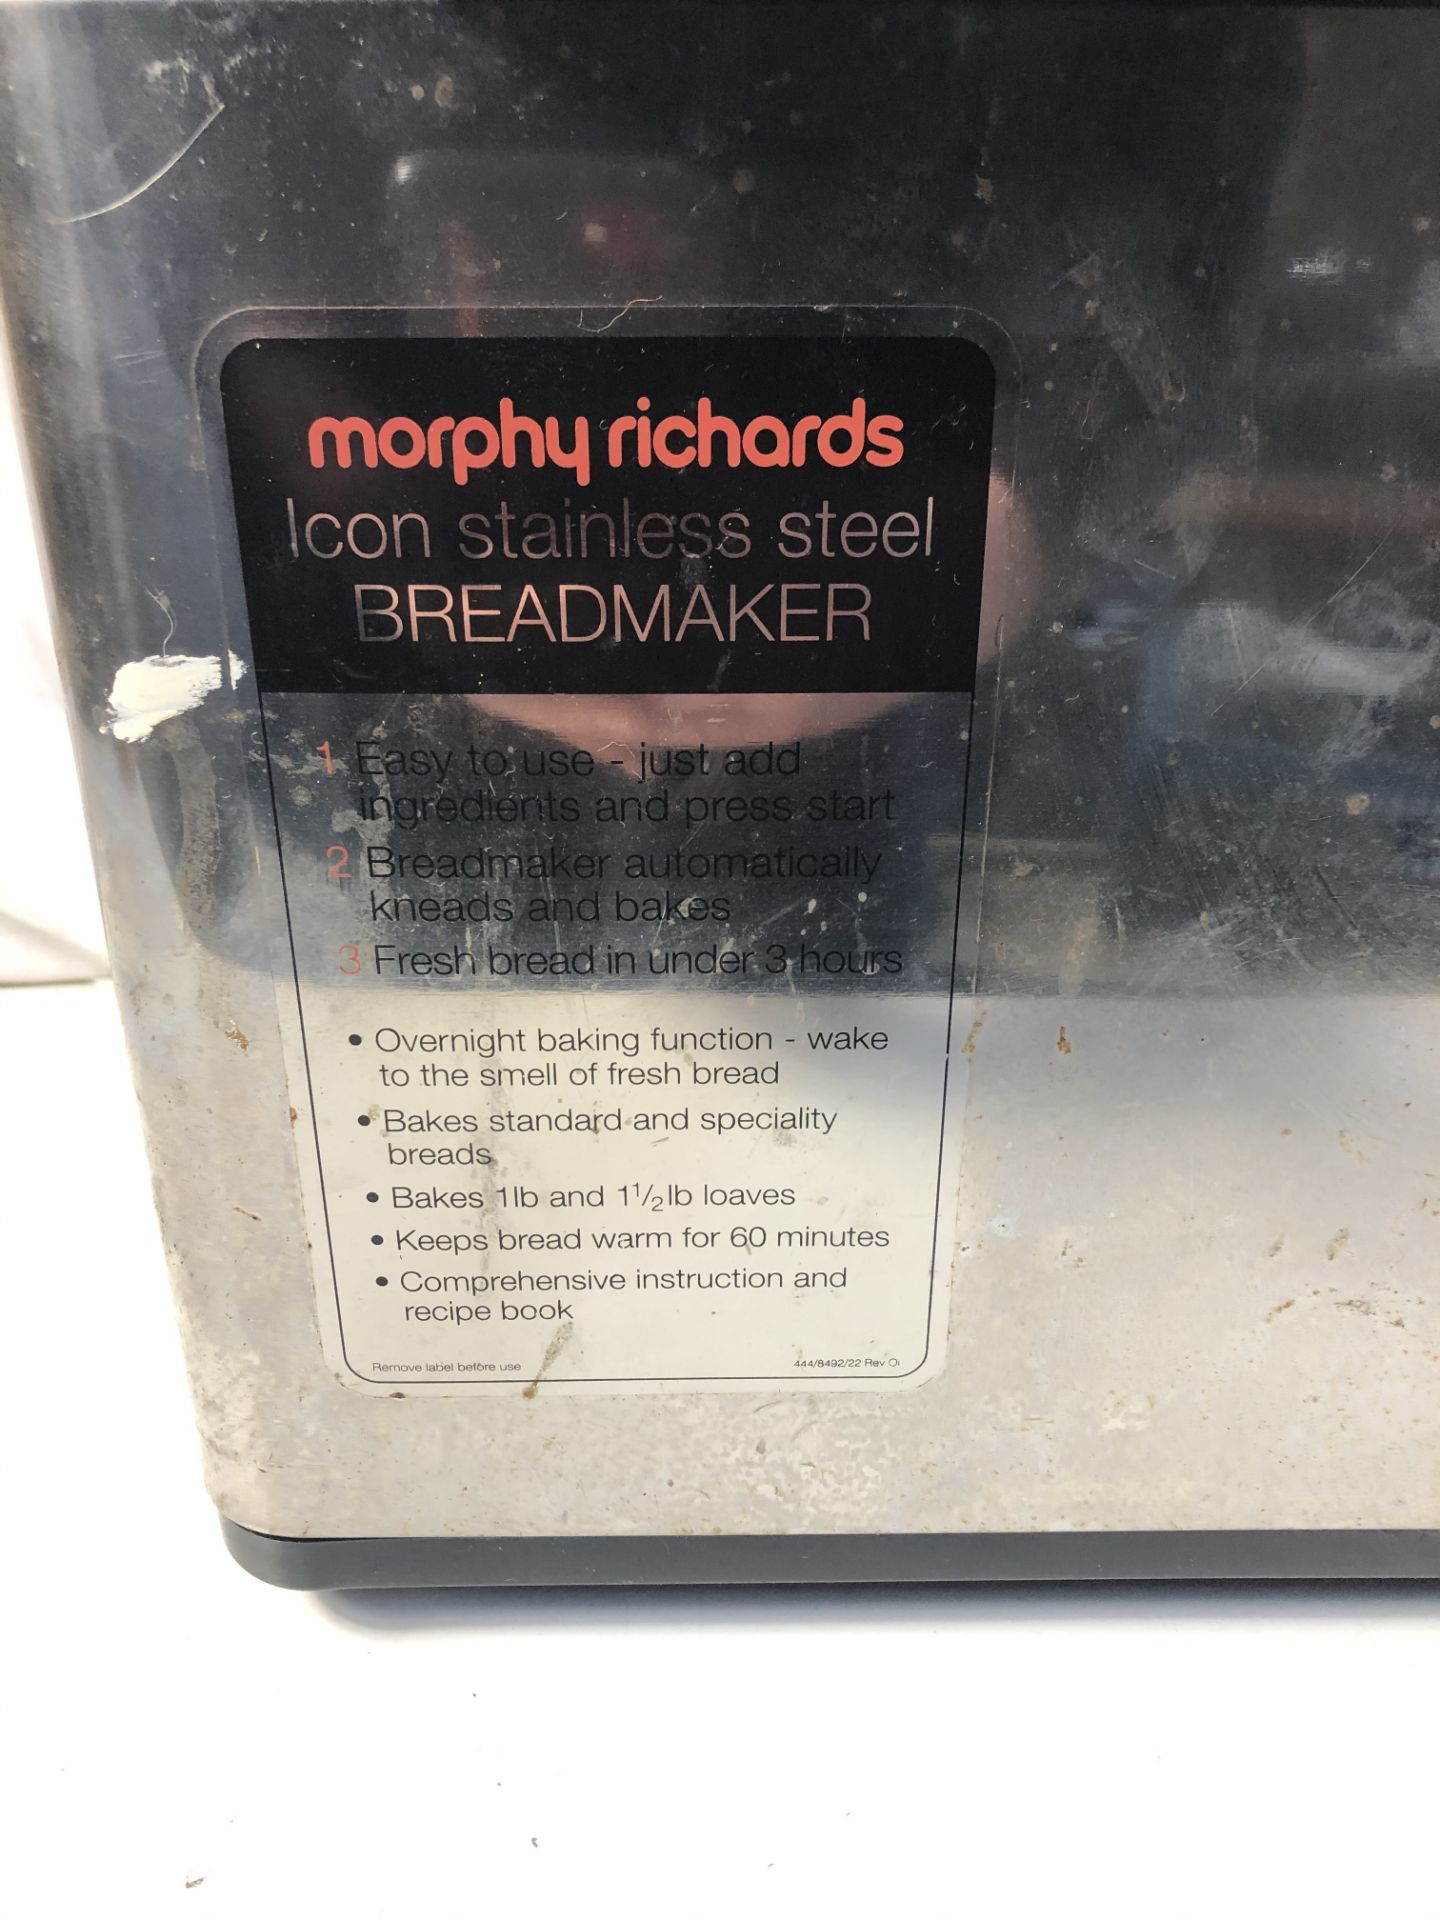 Morphy Richards bread maker - Image 2 of 4